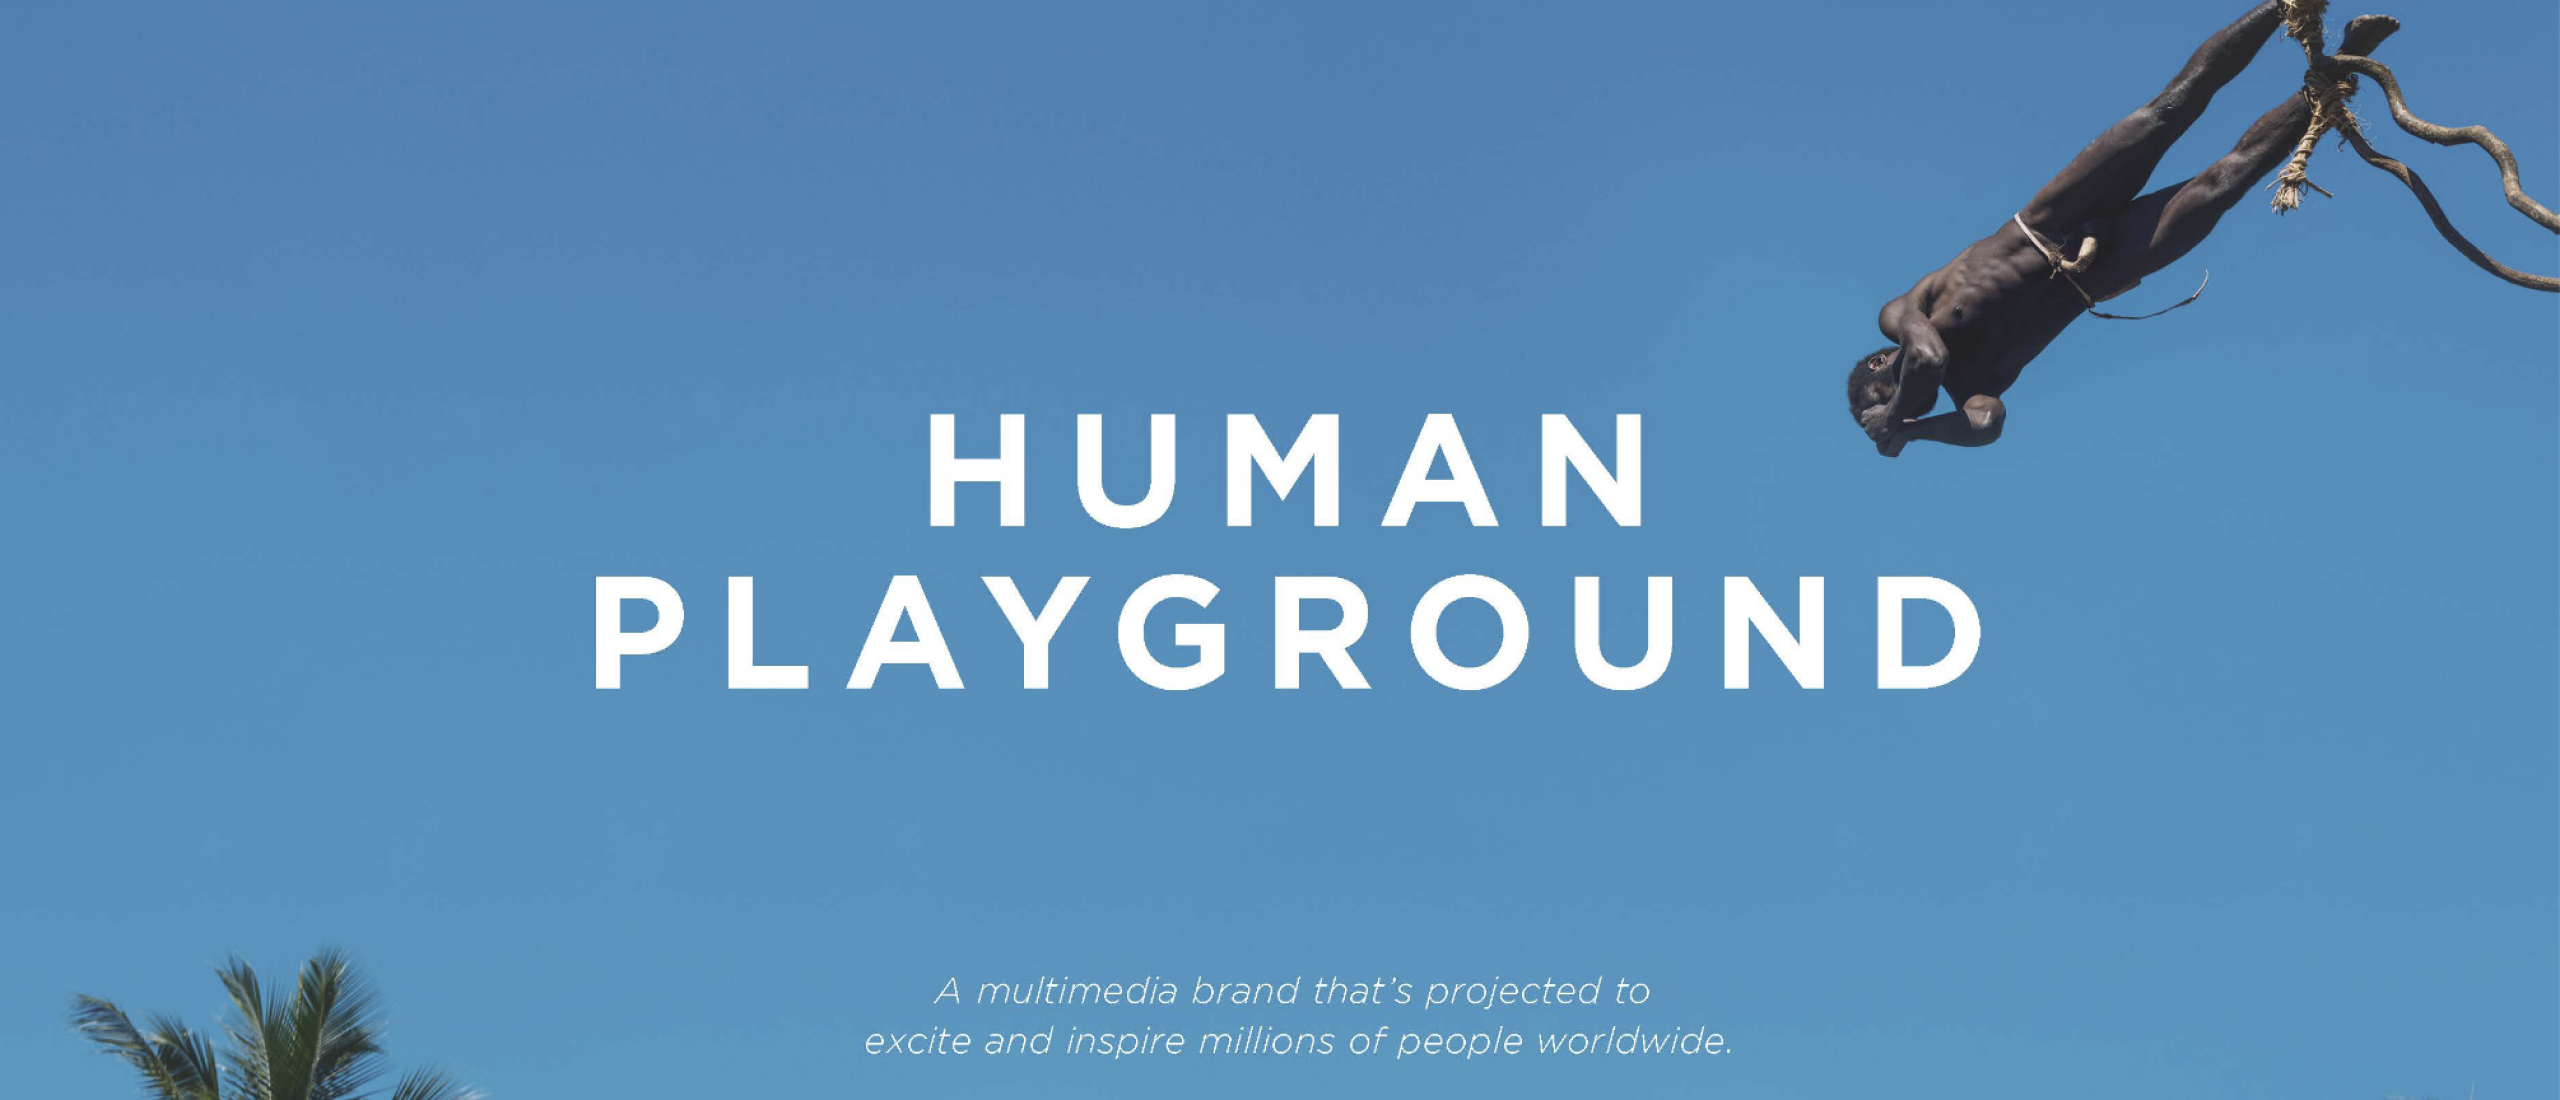 Human Playground - by Hannelore Vandenbussche Netflix original